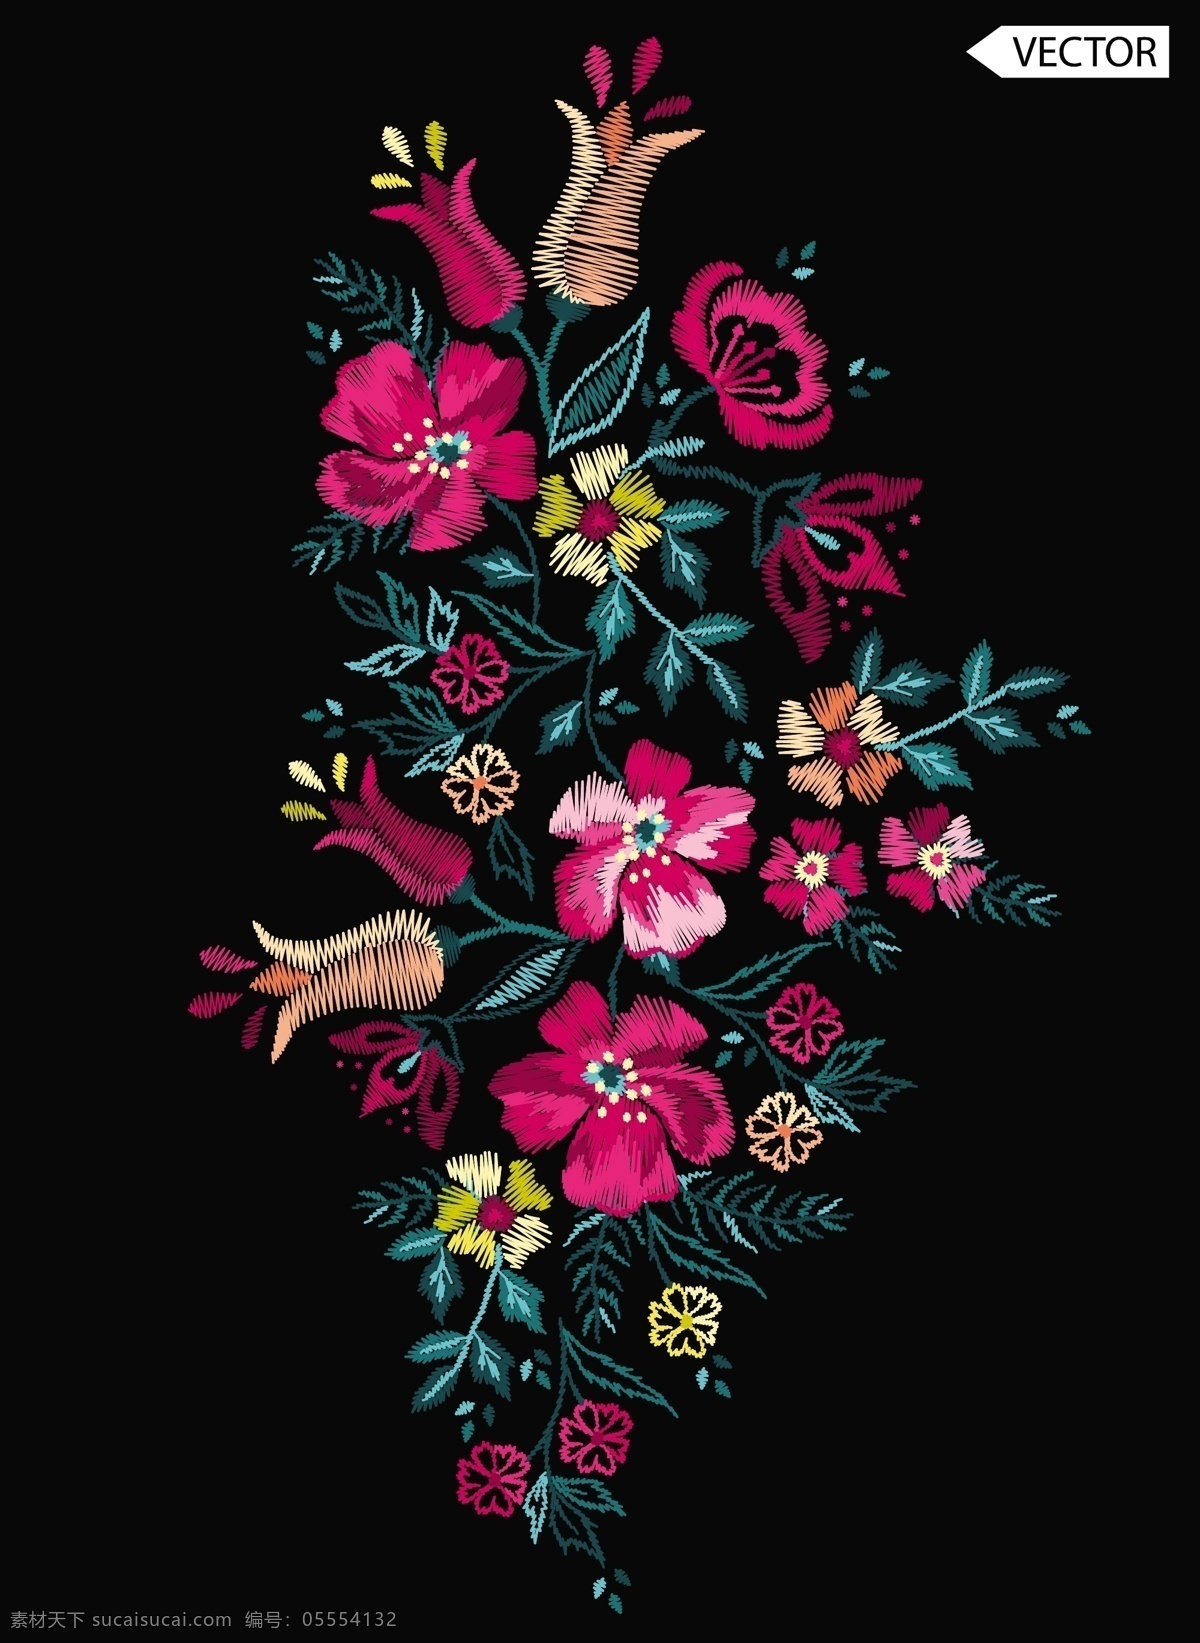 彩色 刺绣 花卉 矢量 绣花 矢量素材 中国风 旗袍 矢量图